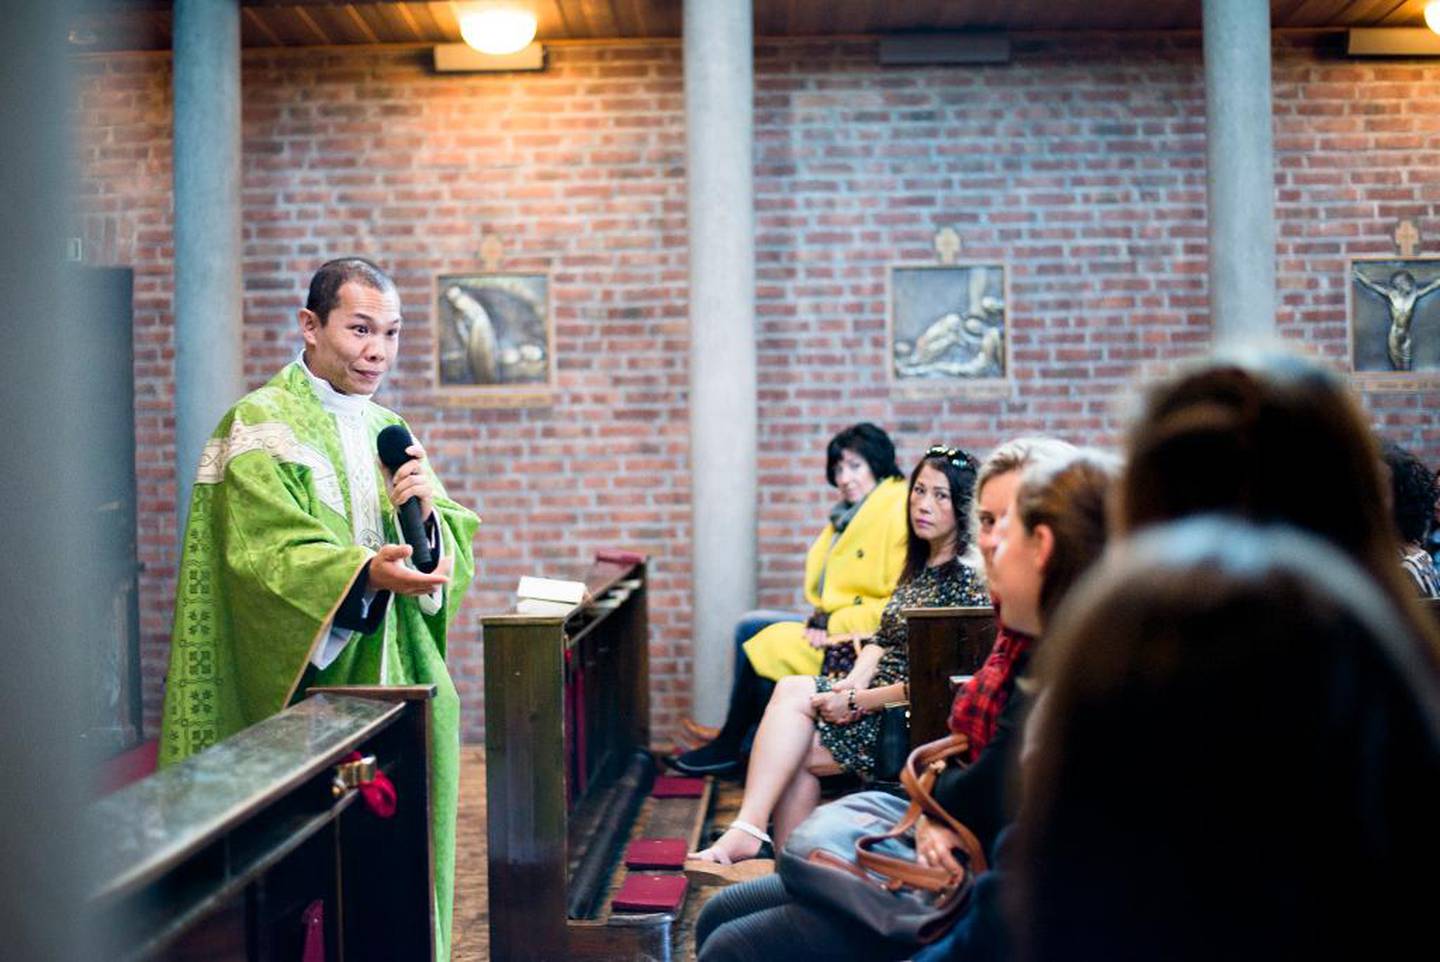 Det er familiegudstjeneste i St. Torfinn. Hele kirken er som en familie, sier kapellanen Duc Khiem Nguyen. – Når presten tar avgjørelser, er det på samme måte som at en familiefar bestemmer.